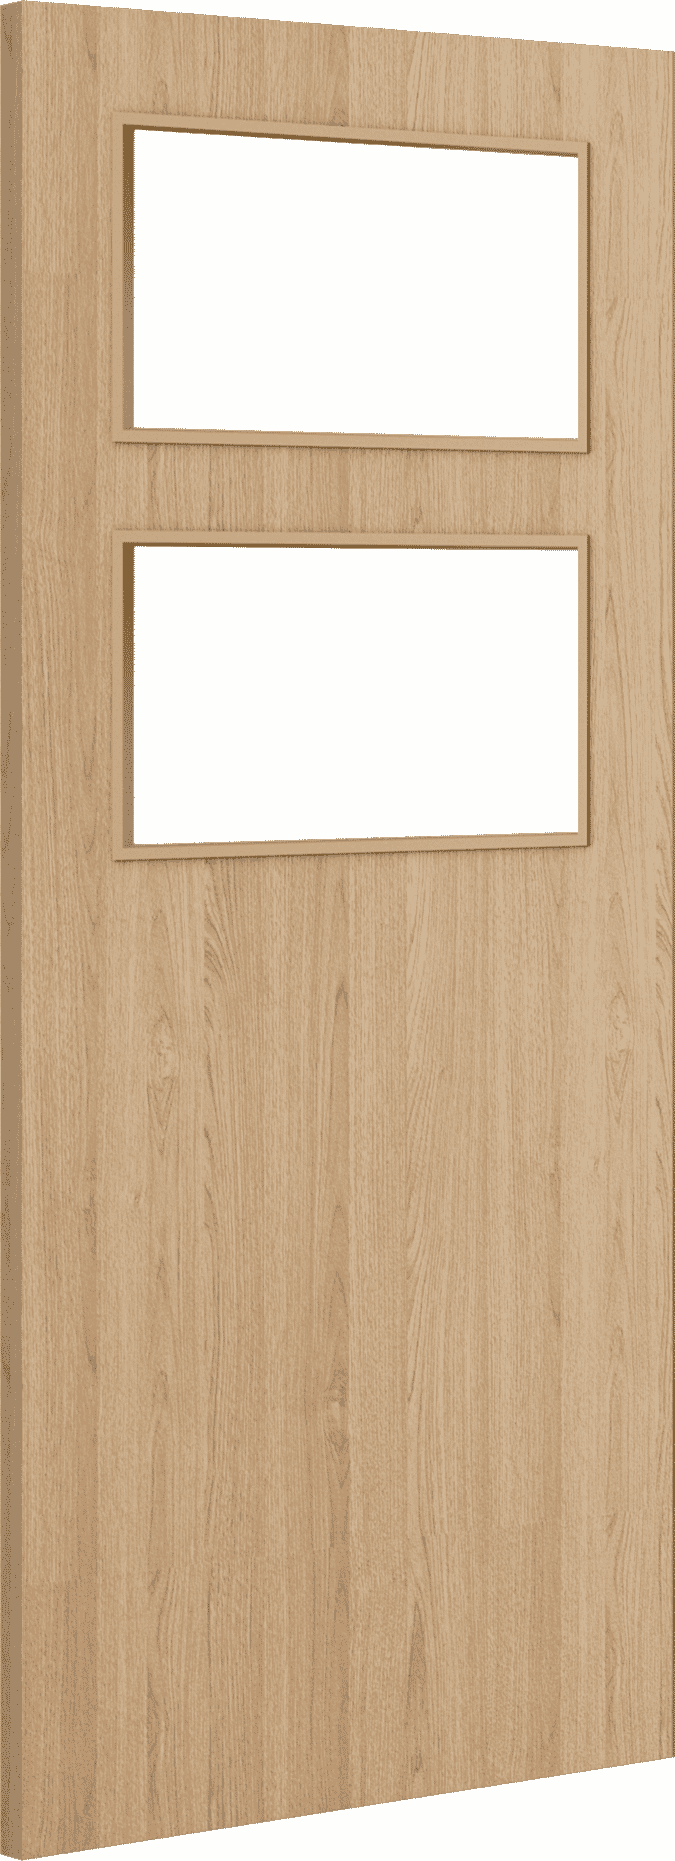 2040mm x 626mm x 44mm Architectural Oak 02 Clear Glazed - Prefinished FD30 Fire Door Blank